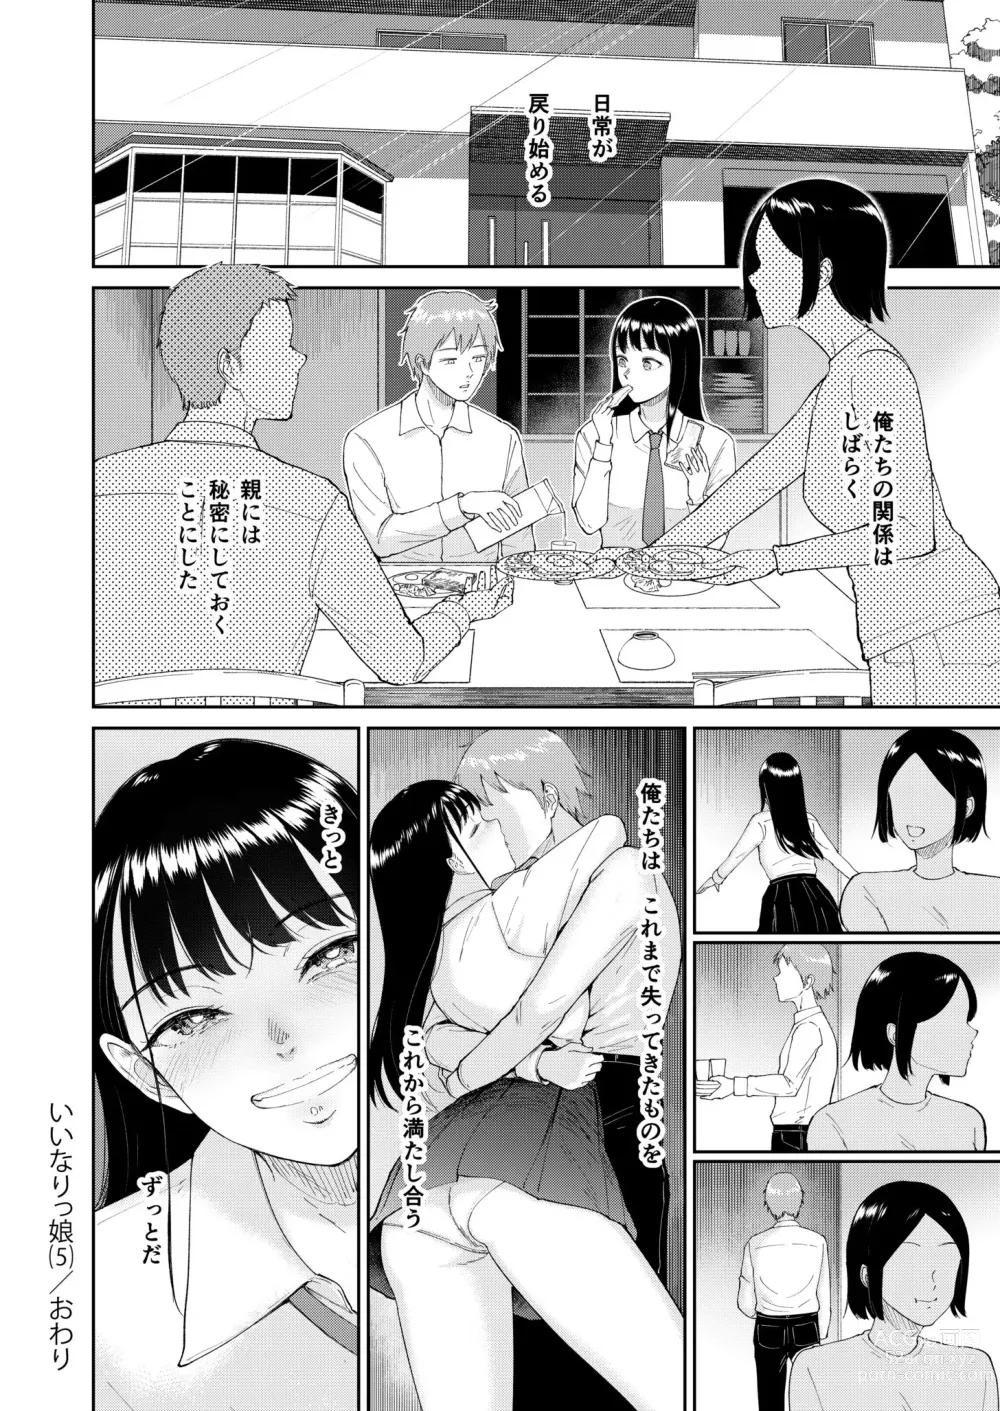 Page 34 of manga Iinarikko 5